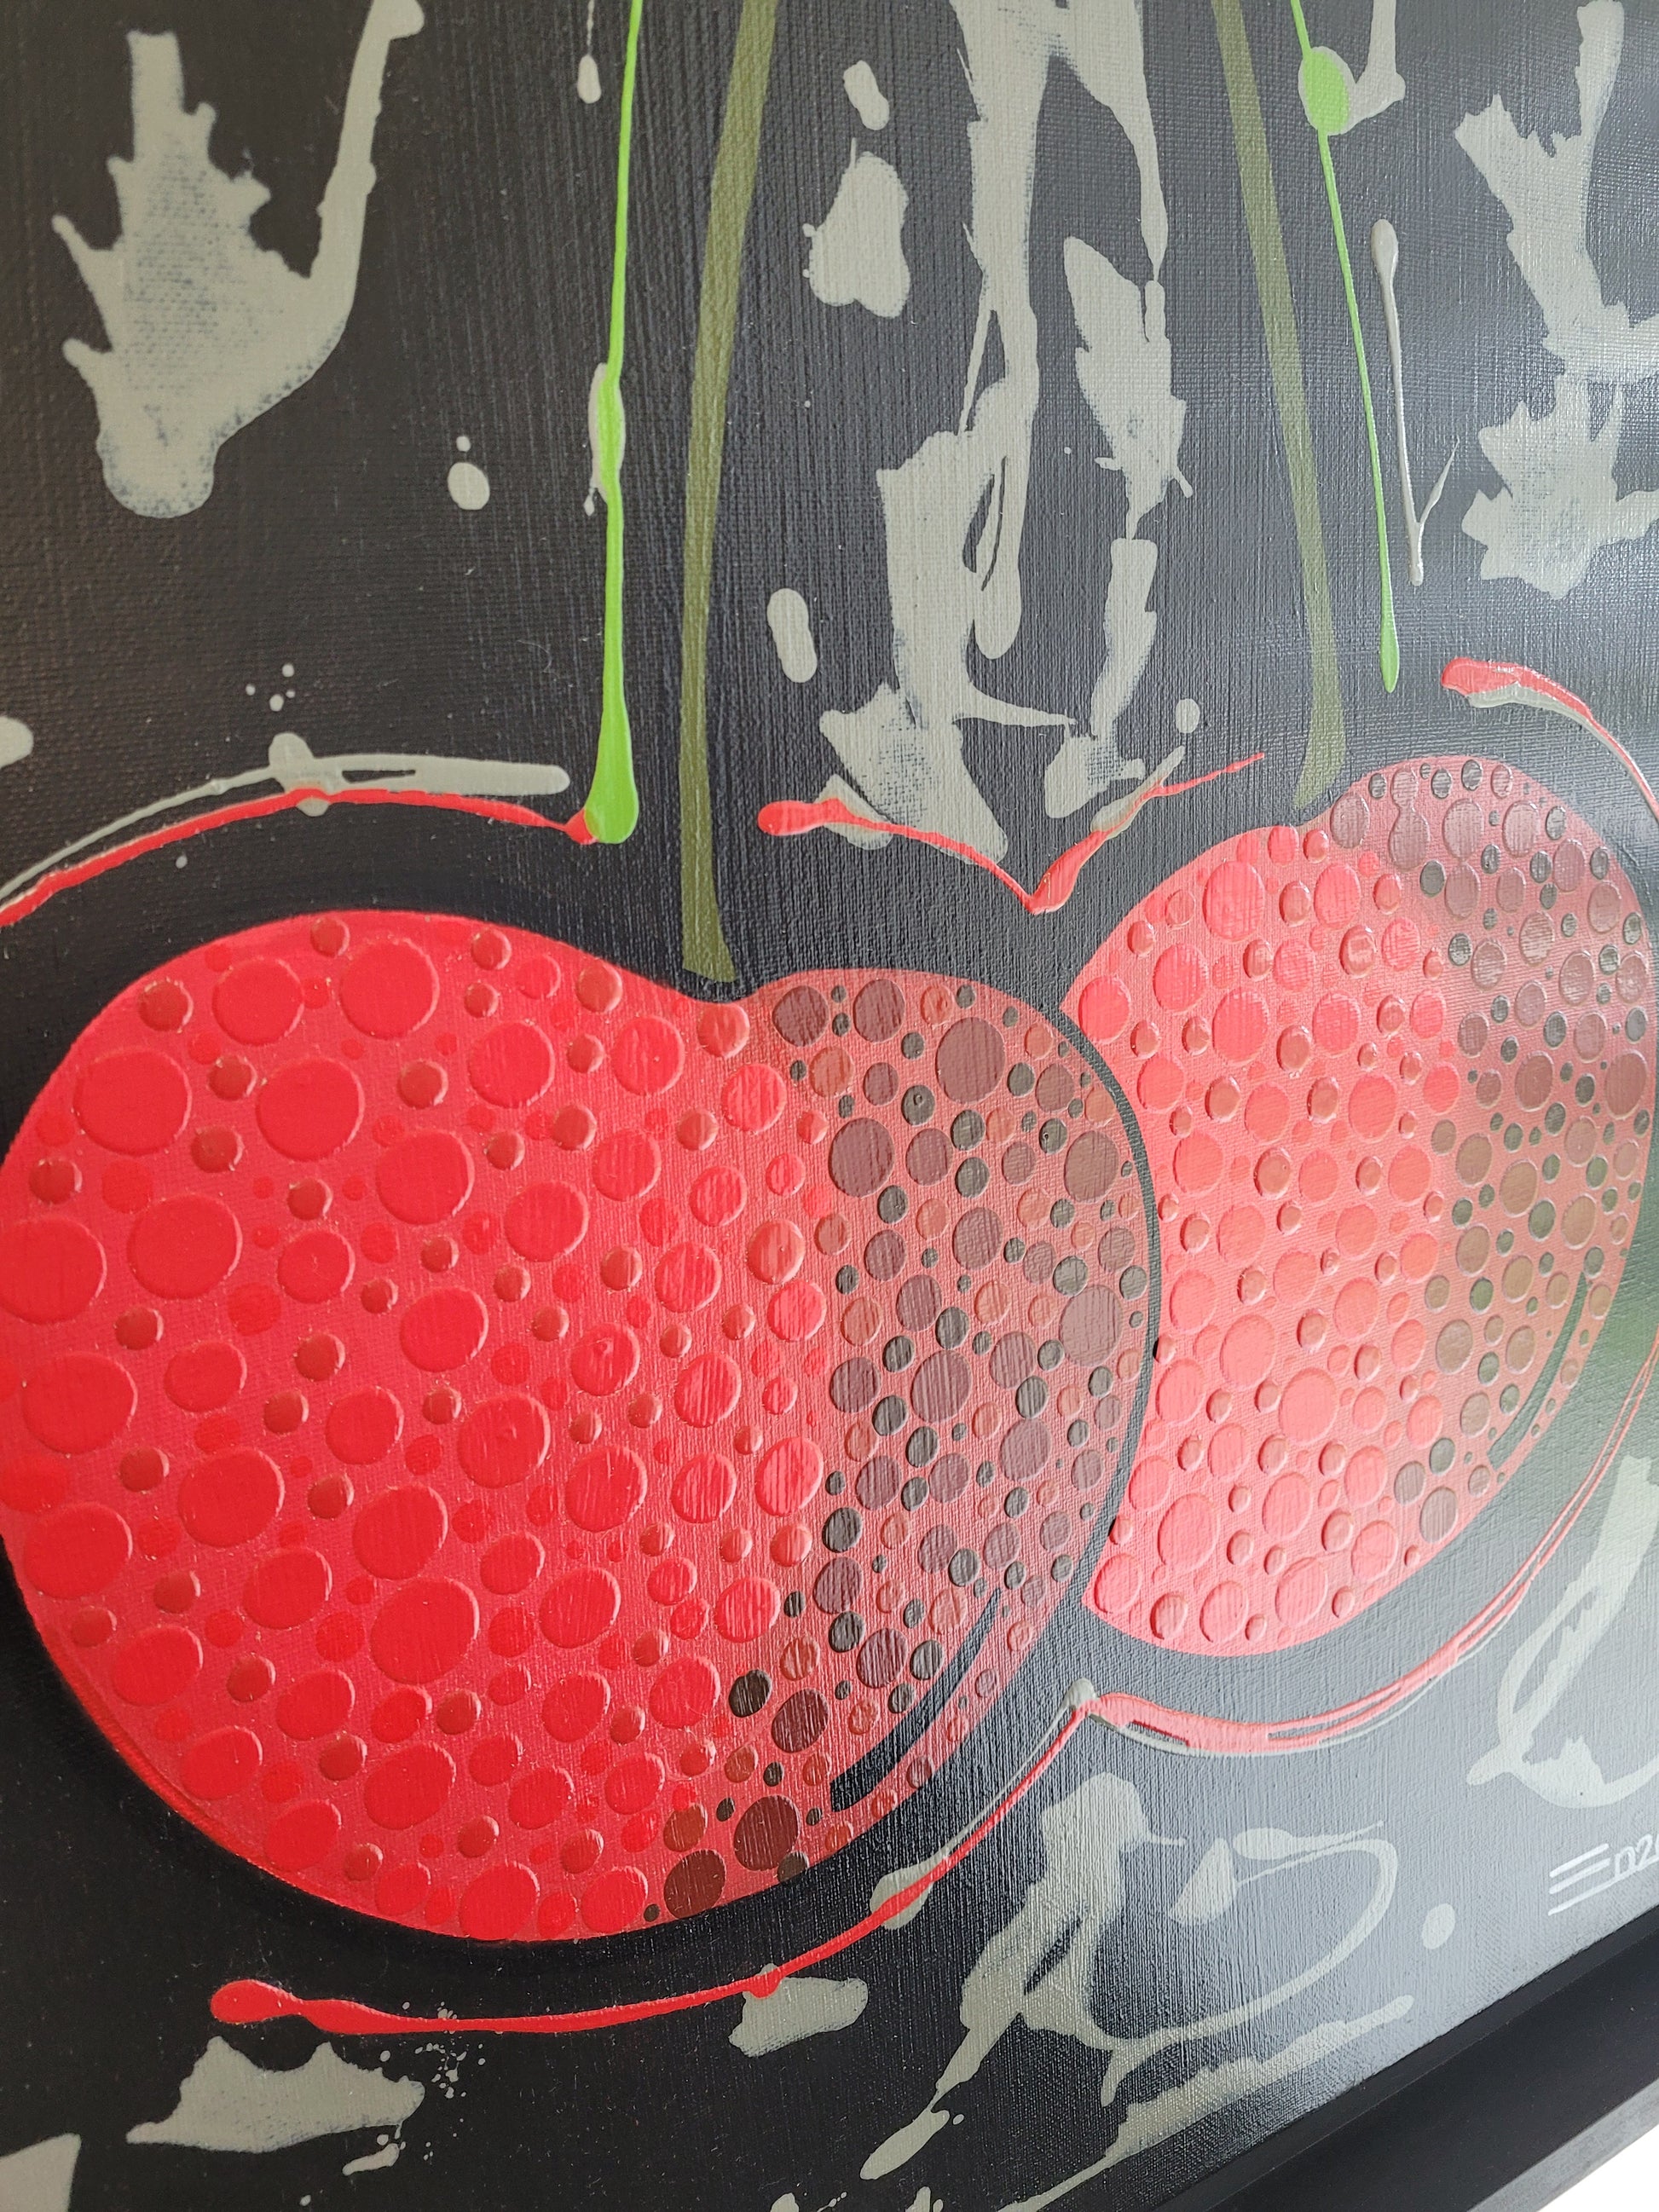 Cherries By Enza - Artwork